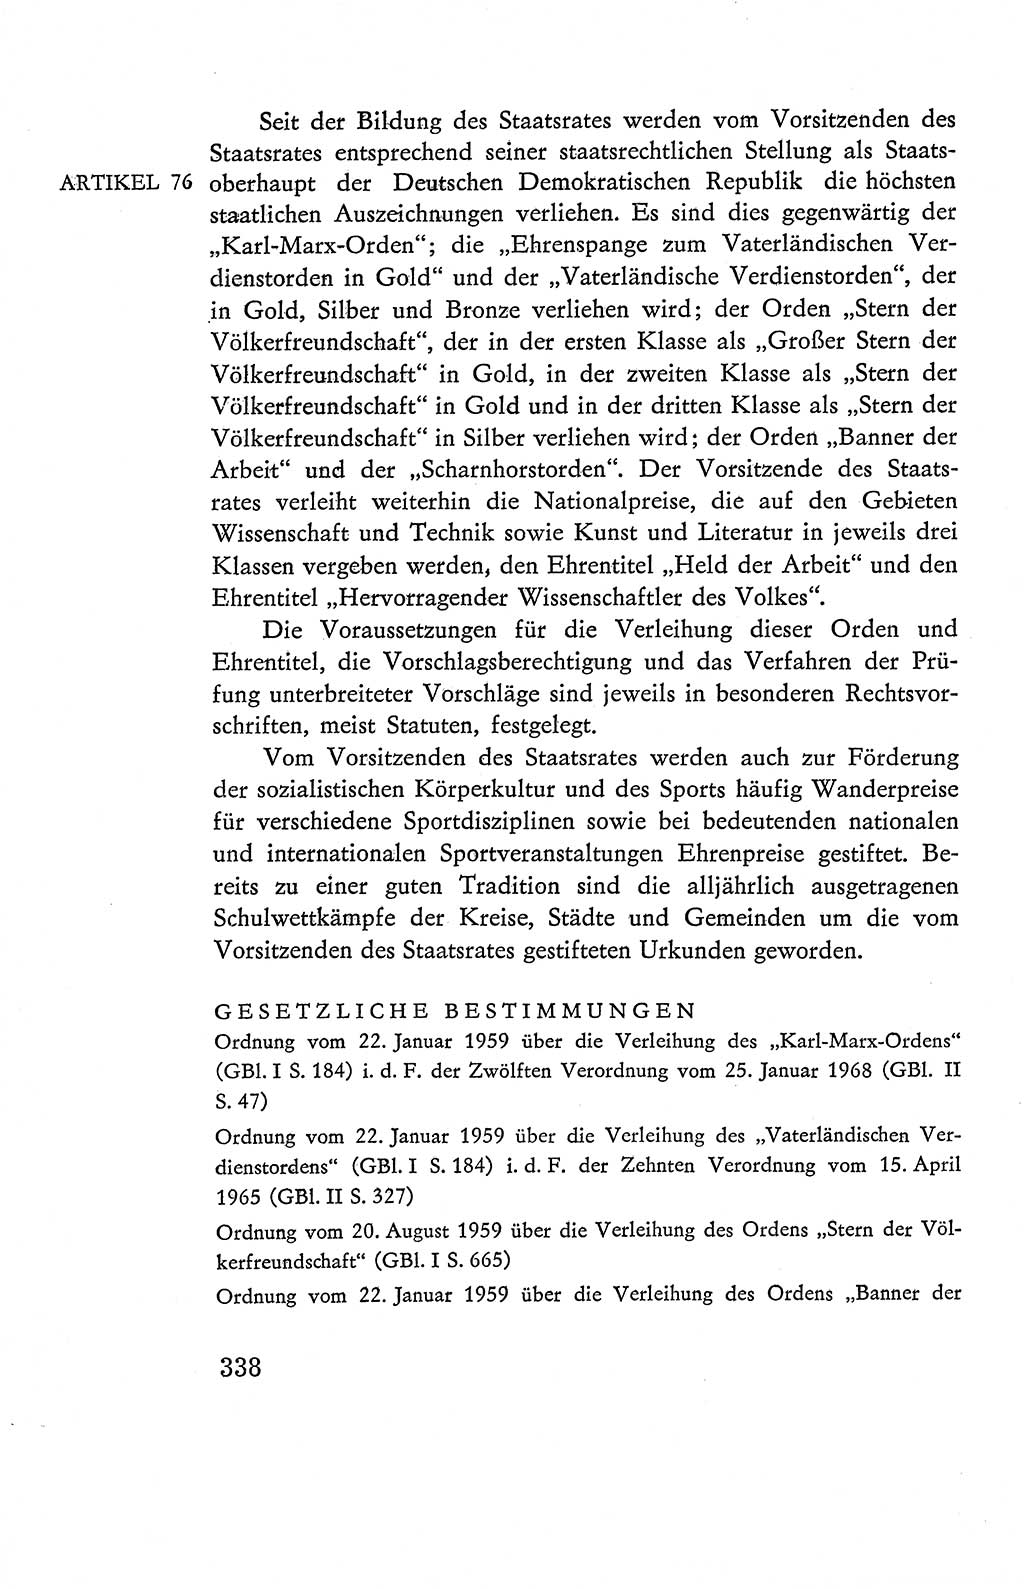 Verfassung der Deutschen Demokratischen Republik (DDR), Dokumente, Kommentar 1969, Band 2, Seite 338 (Verf. DDR Dok. Komm. 1969, Bd. 2, S. 338)